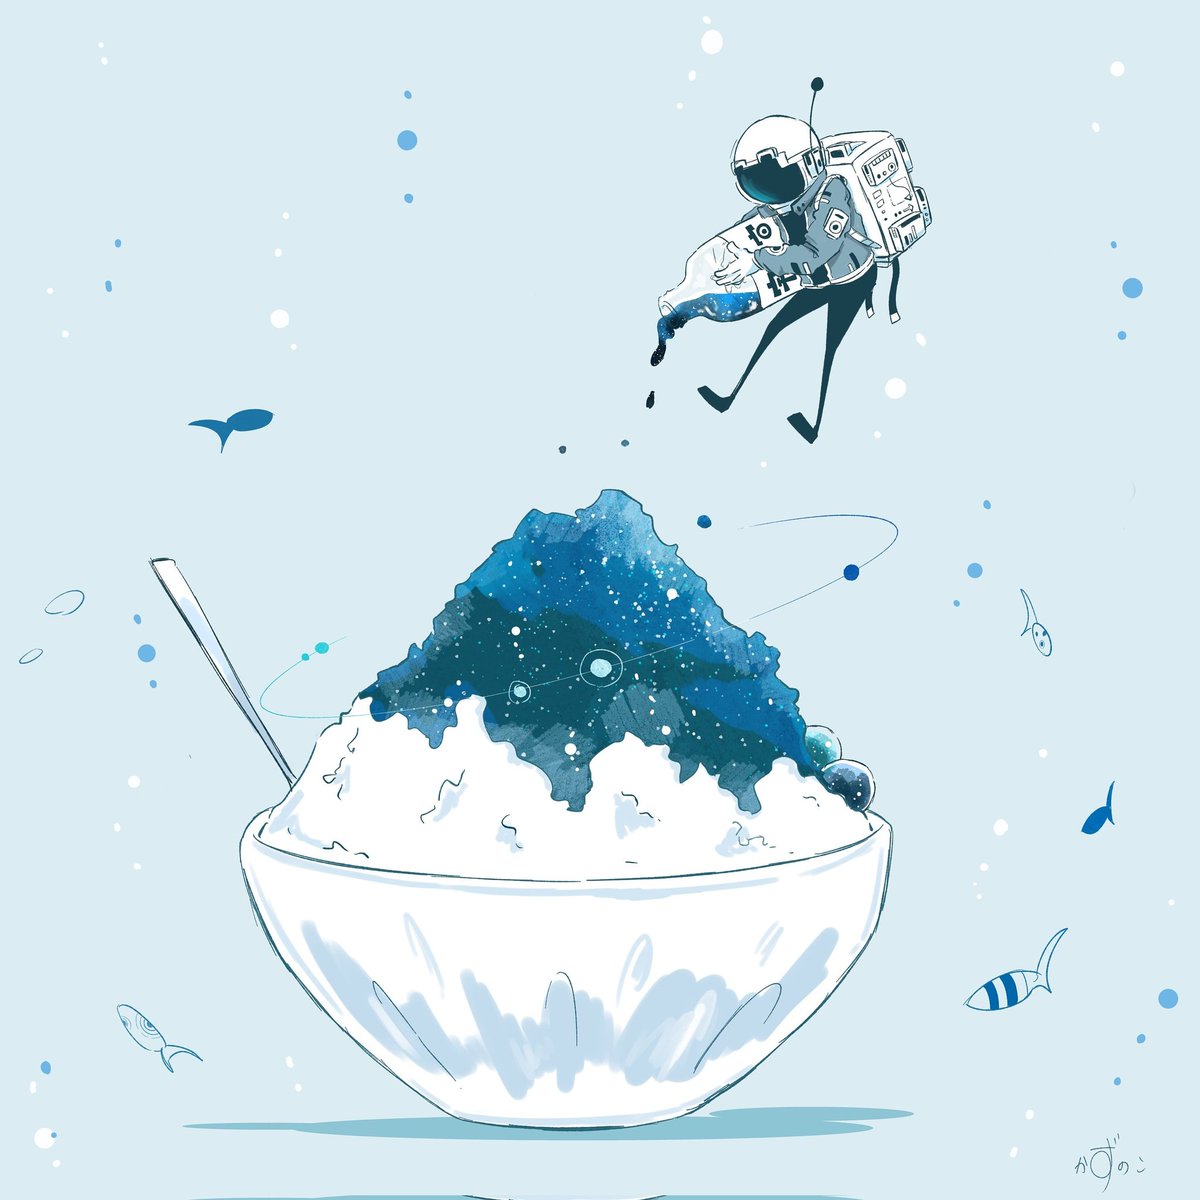 「#ド直球に言いますがフォローしてください
宇宙飛行士と青くて不思議な世界を描いて」|かずのこのイラスト